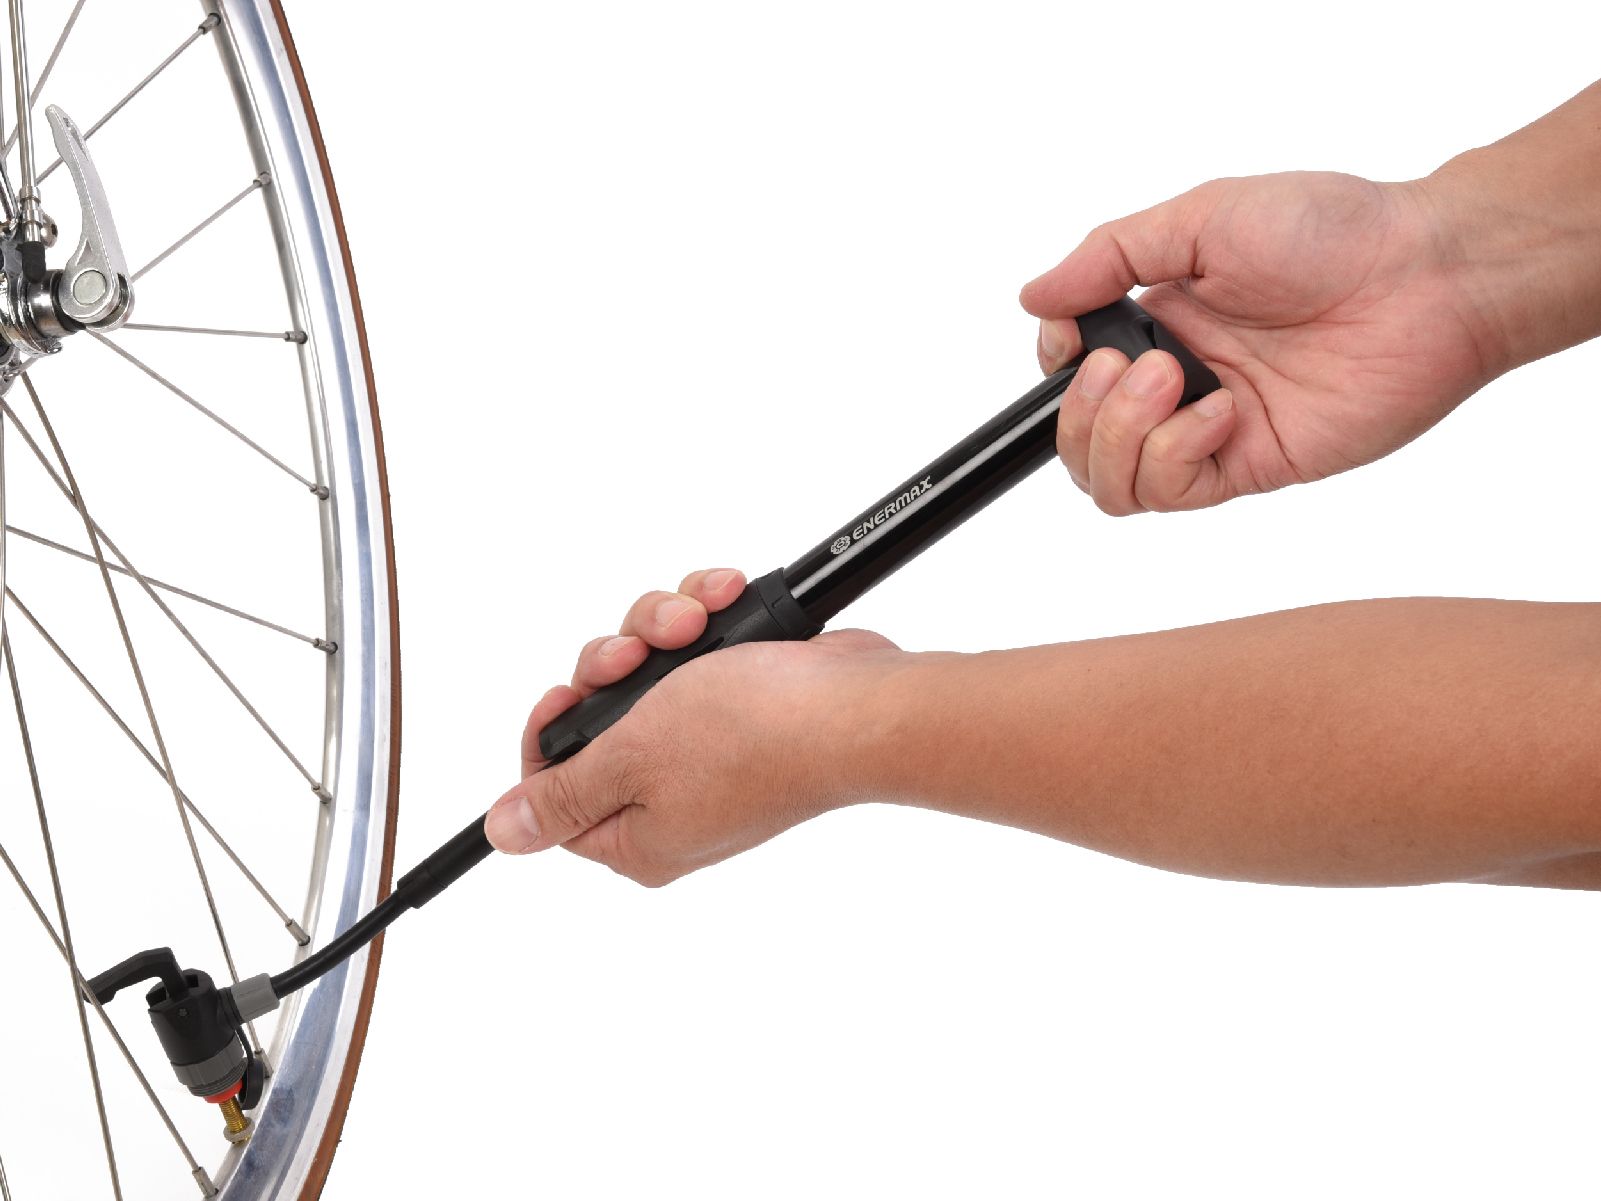 攜帶式打氣筒mini air pump/前端氣嘴軟管購適用於各式自行車車胎，不受限制/ENERMAX安耐美健康科技